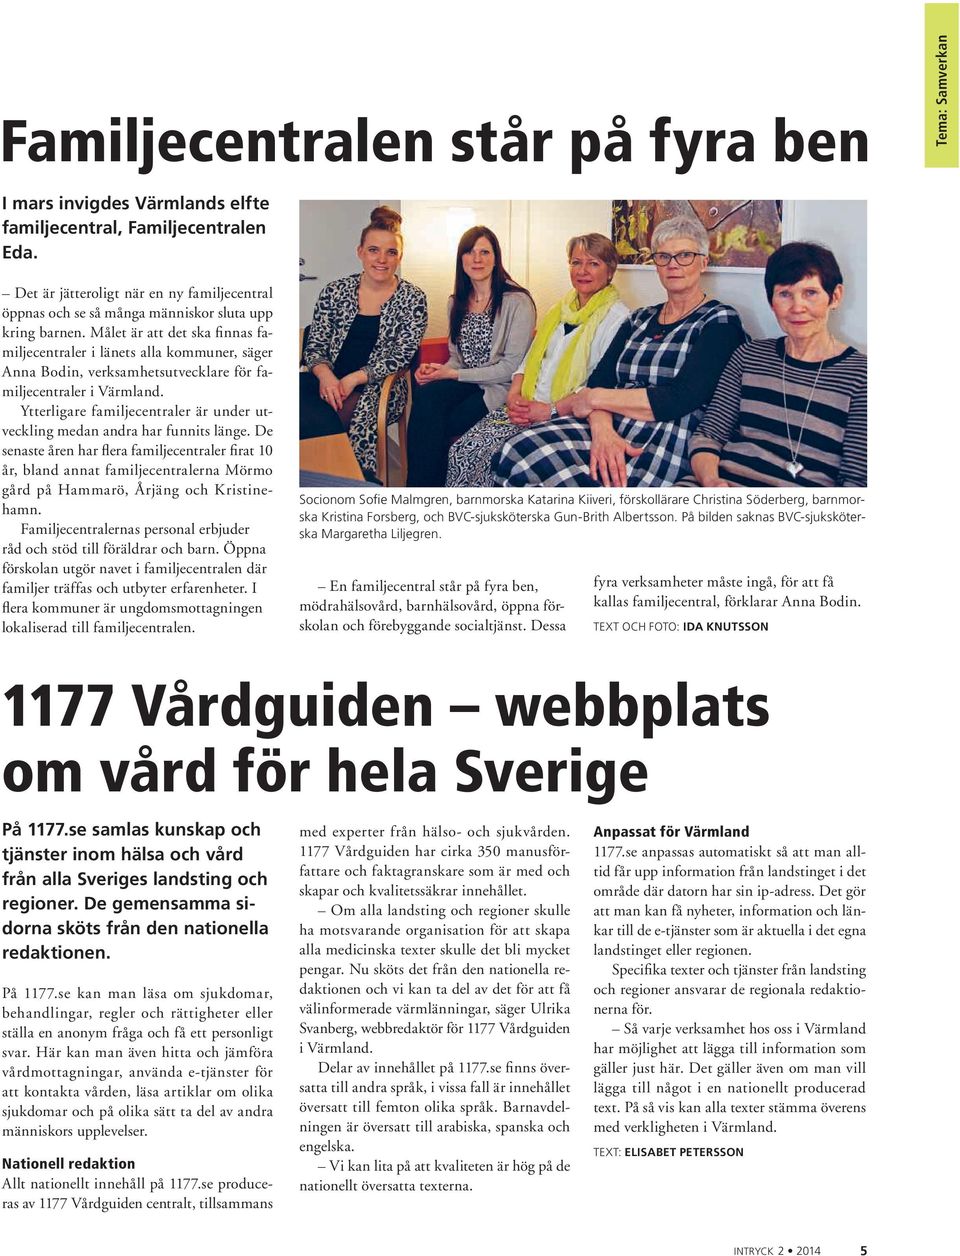 Målet är att det ska finnas familjecentraler i länets alla kommuner, säger Anna Bodin, verksamhetsutvecklare för familjecentraler i Värmland.